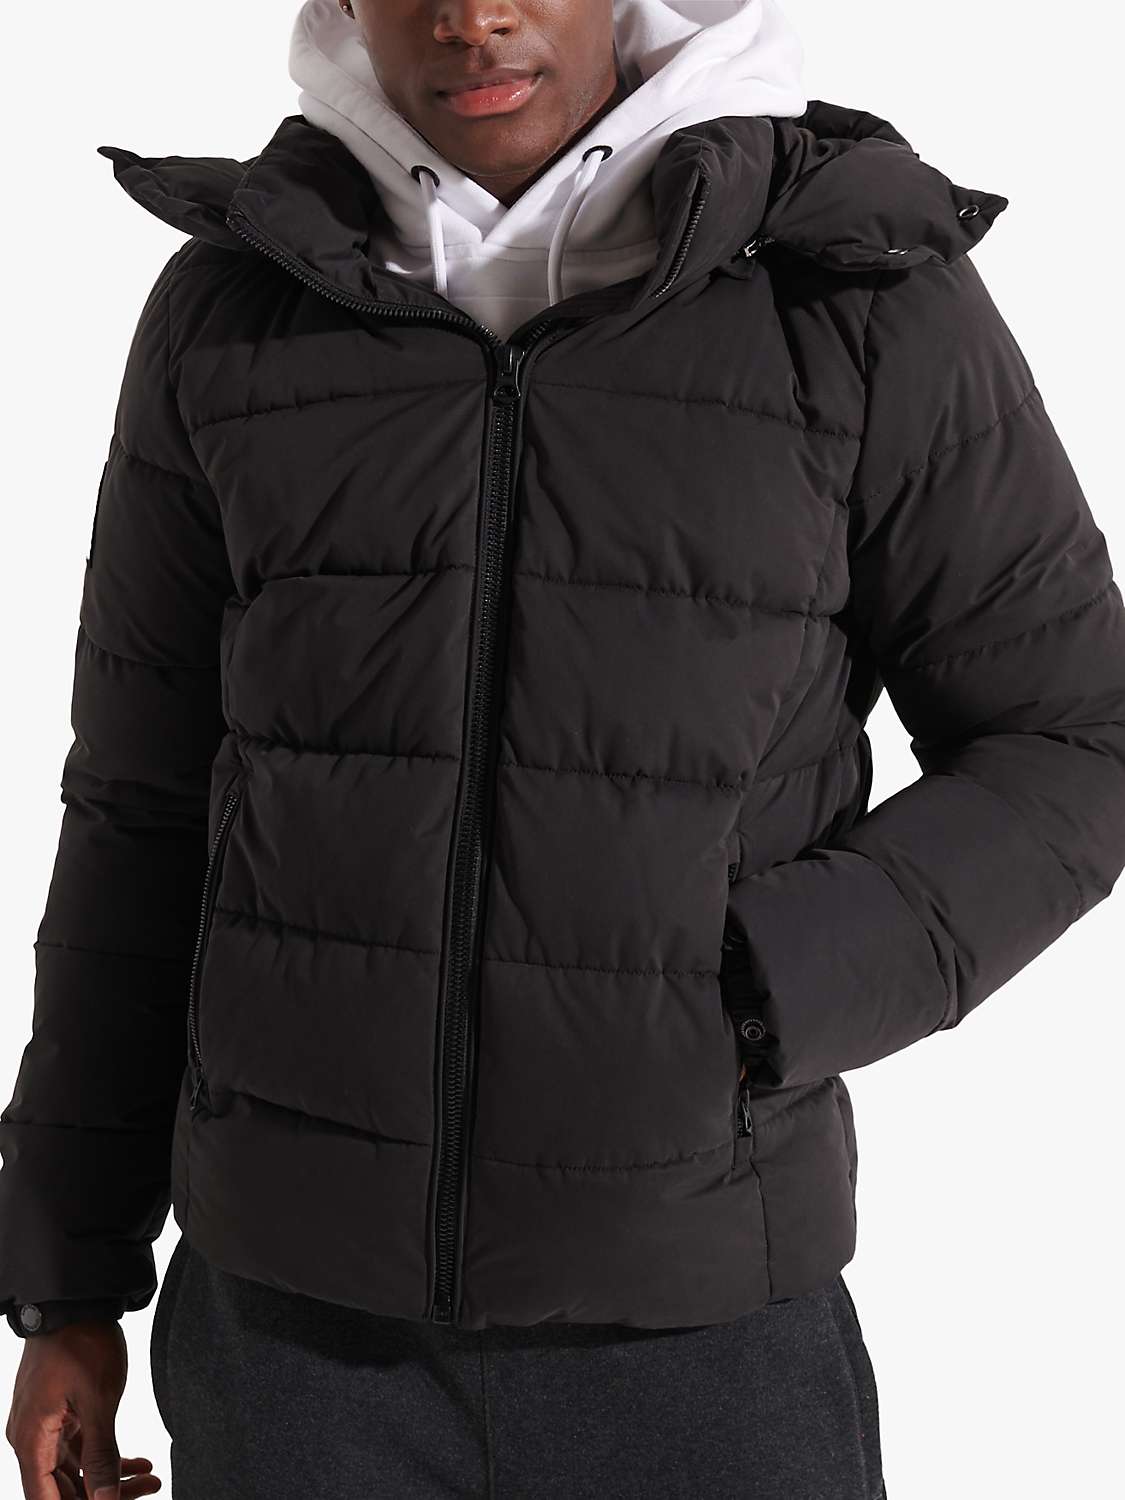 Superdry Mountain Puffer Jacket, Black at John Lewis & Partners